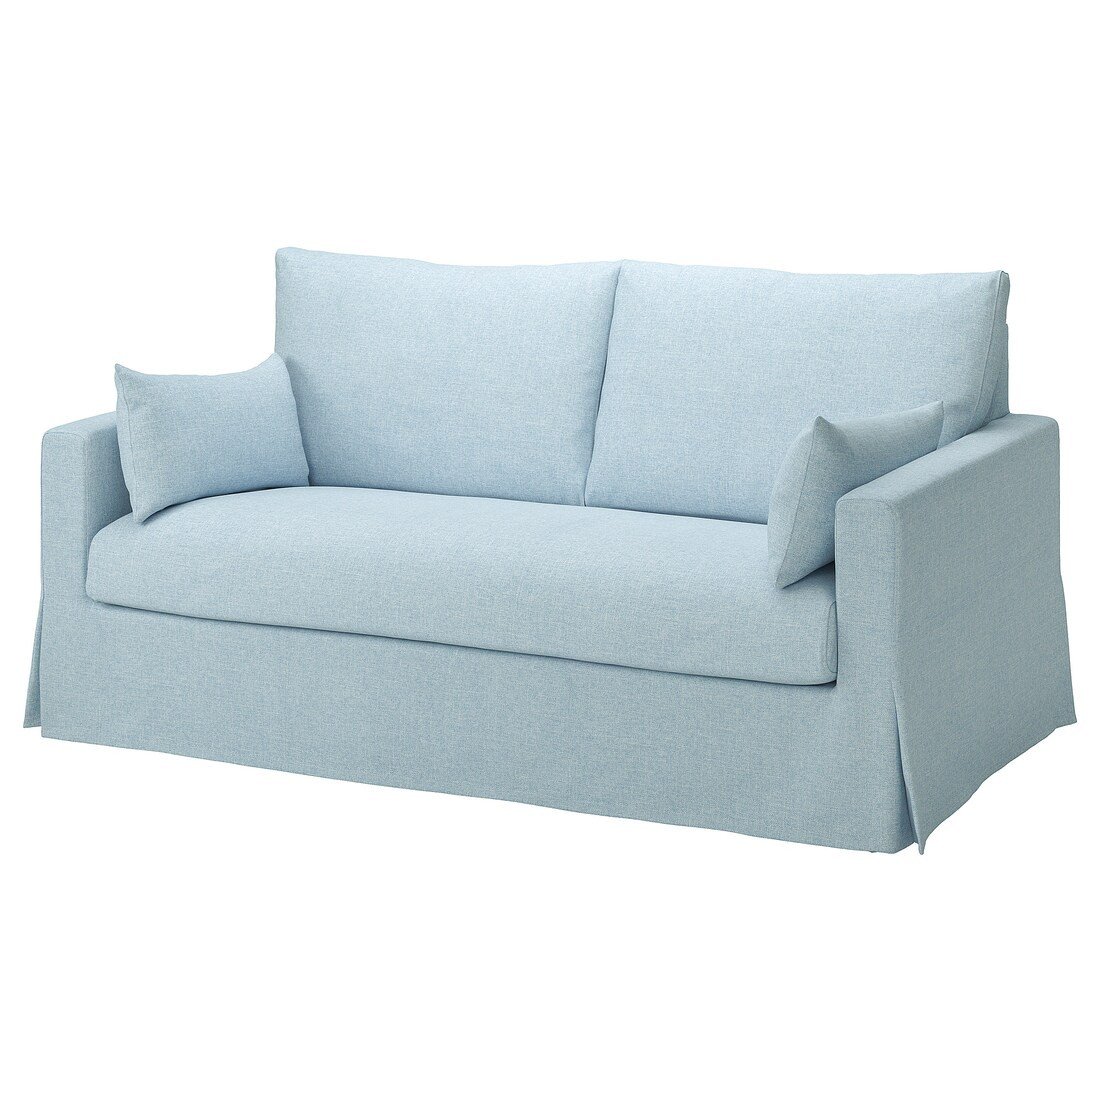 HYLTARP 2-местный диван, Киланда бледно-голубой